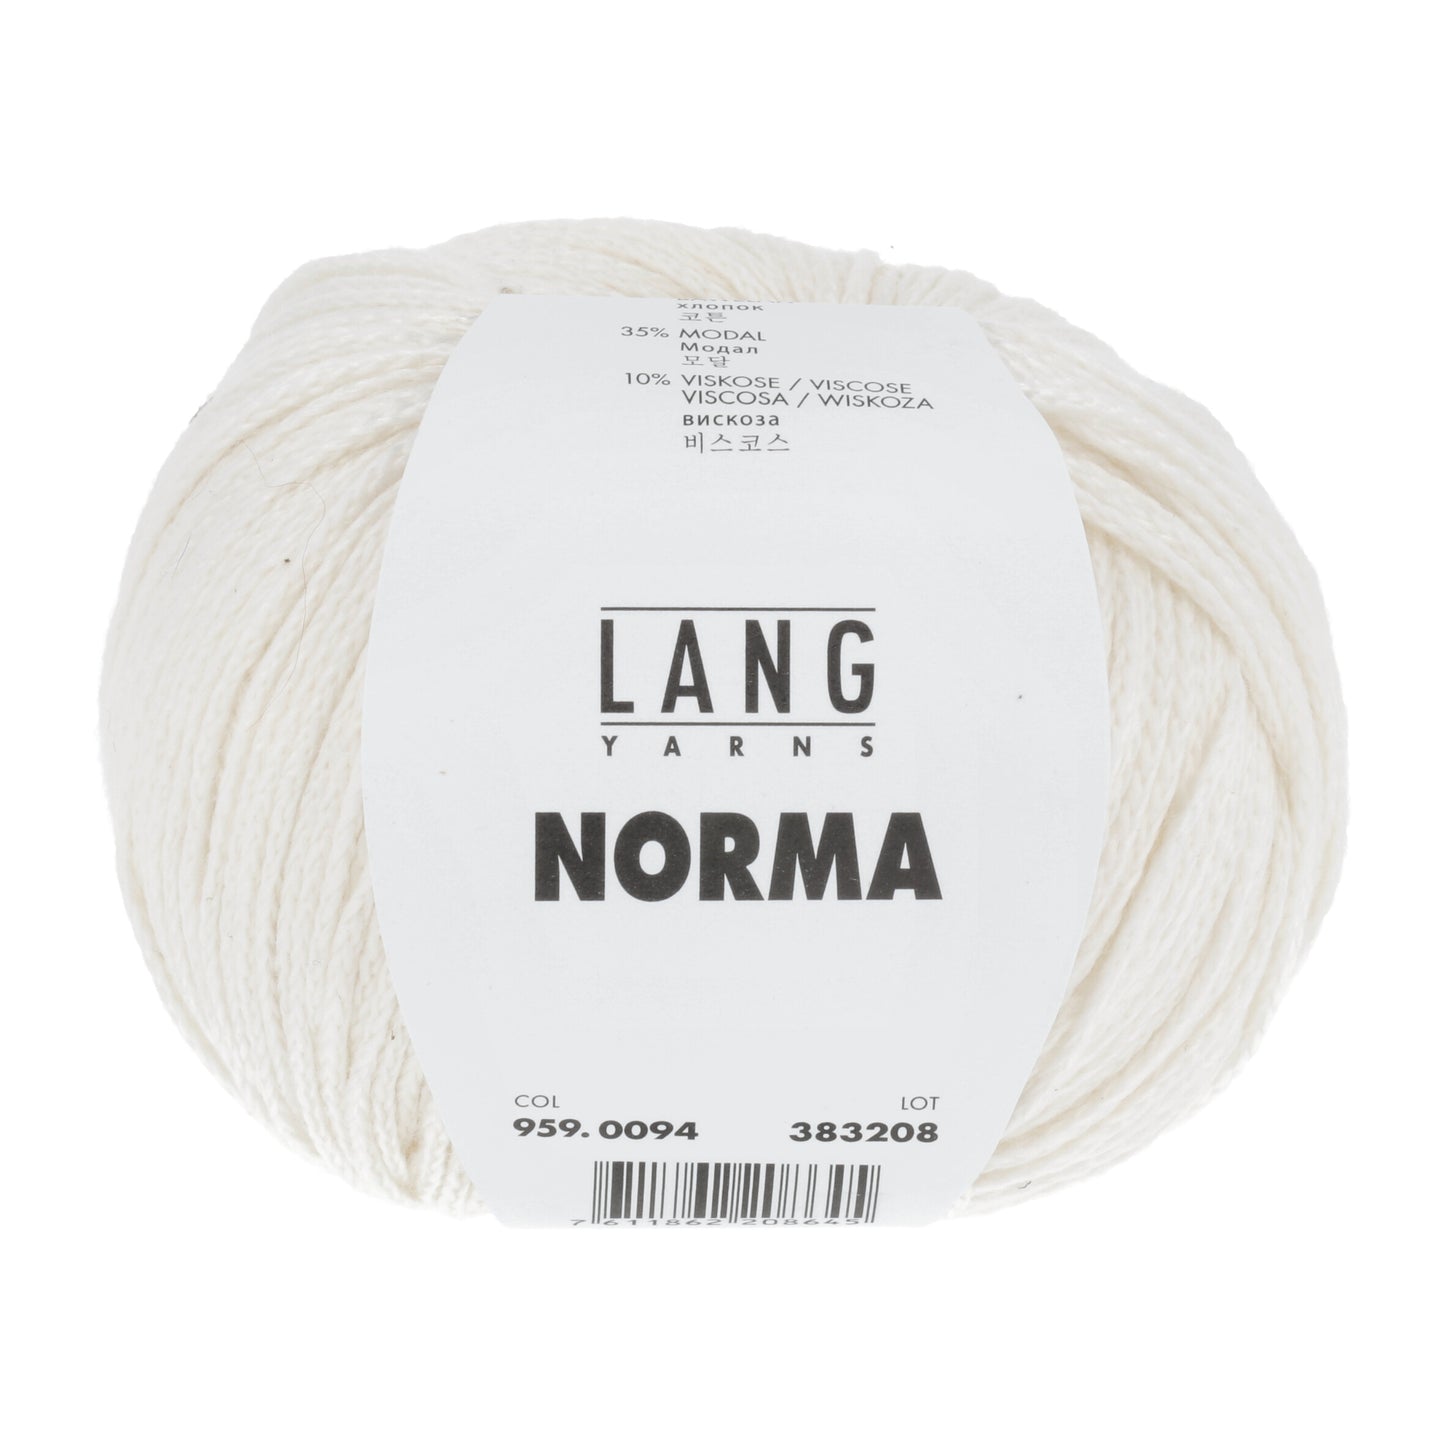 Lang Yarns Norma color 959.0094